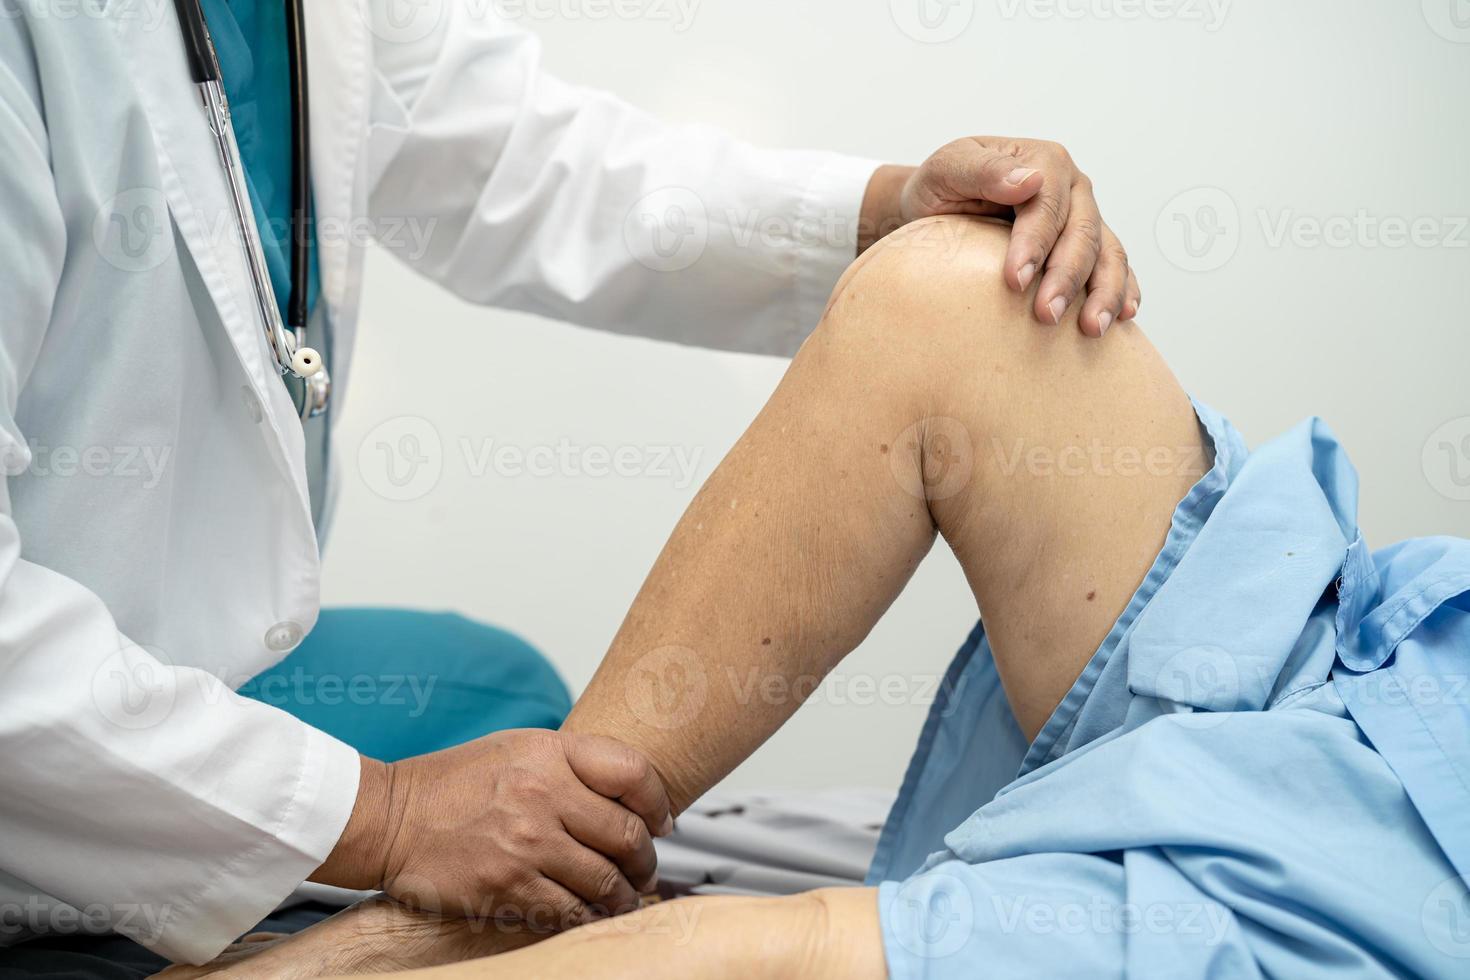 Médico fisioterapeuta examinando, massageando e tratando o joelho e a perna do paciente sênior no hospital de enfermagem da clínica médica ortopedista. foto